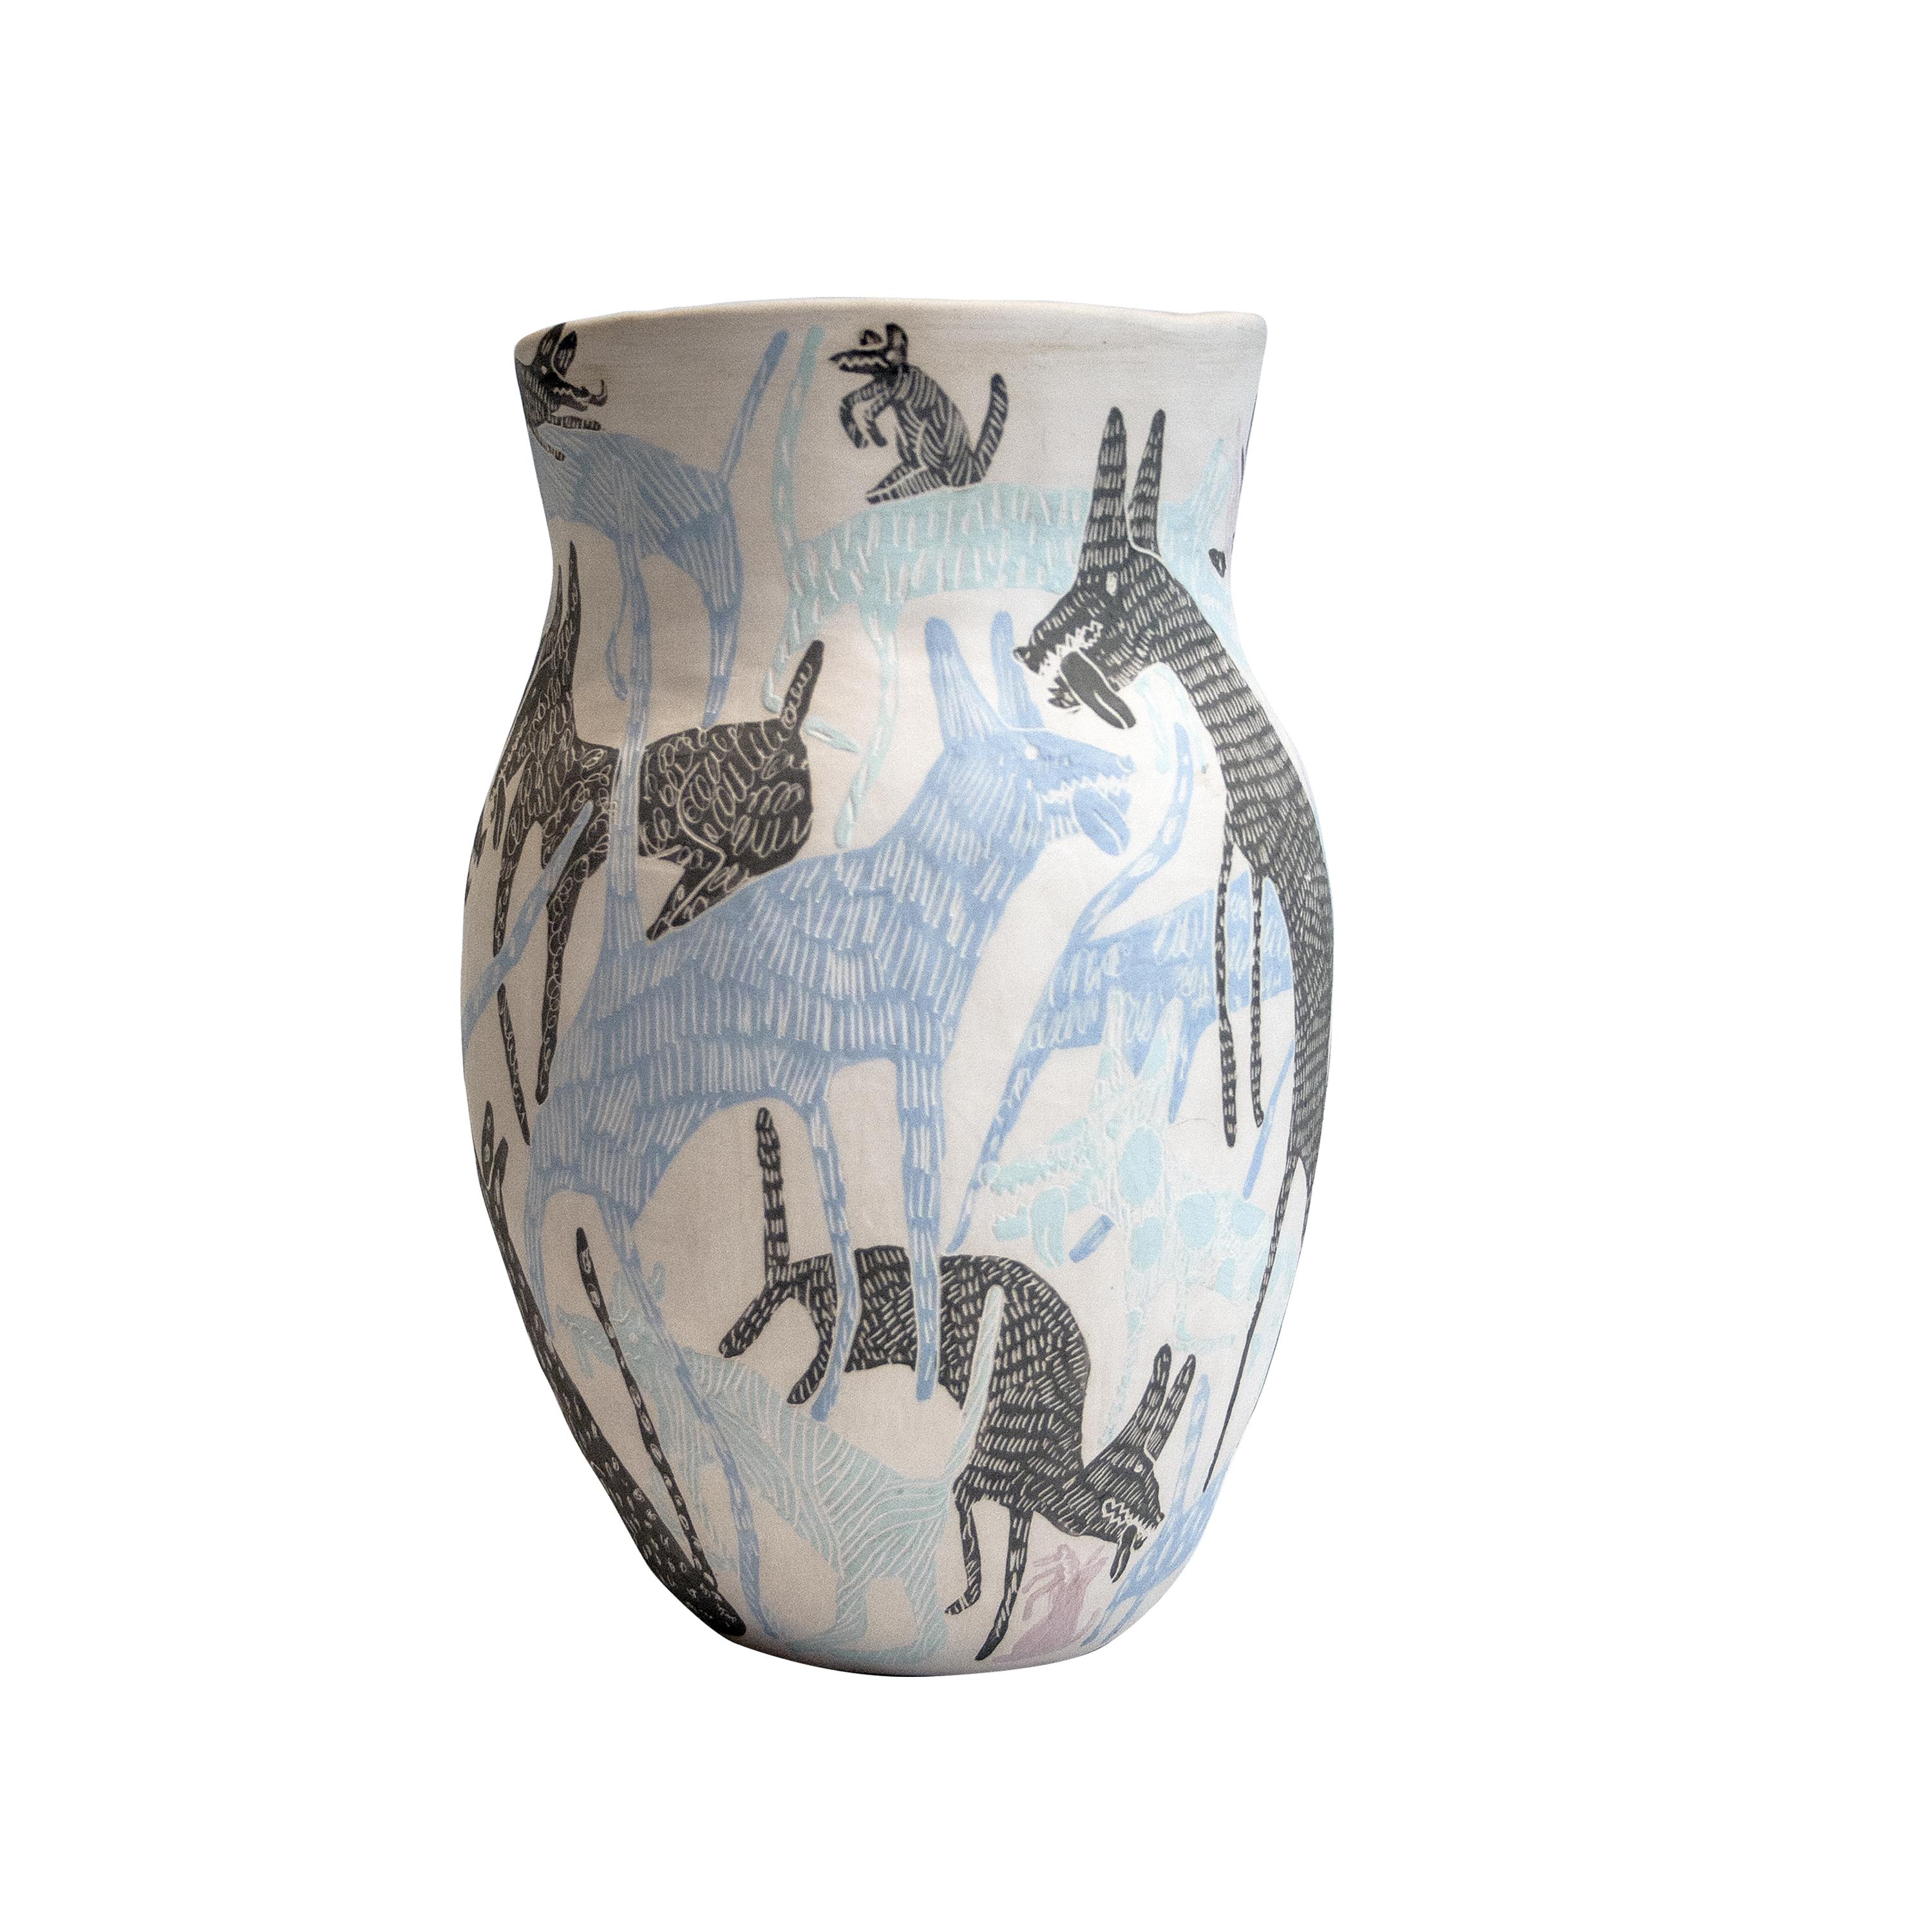 Diese handgefertigte Vase wurde von der Collaboration der spanischen Designer Carlos Jiménez, besser bekannt als 